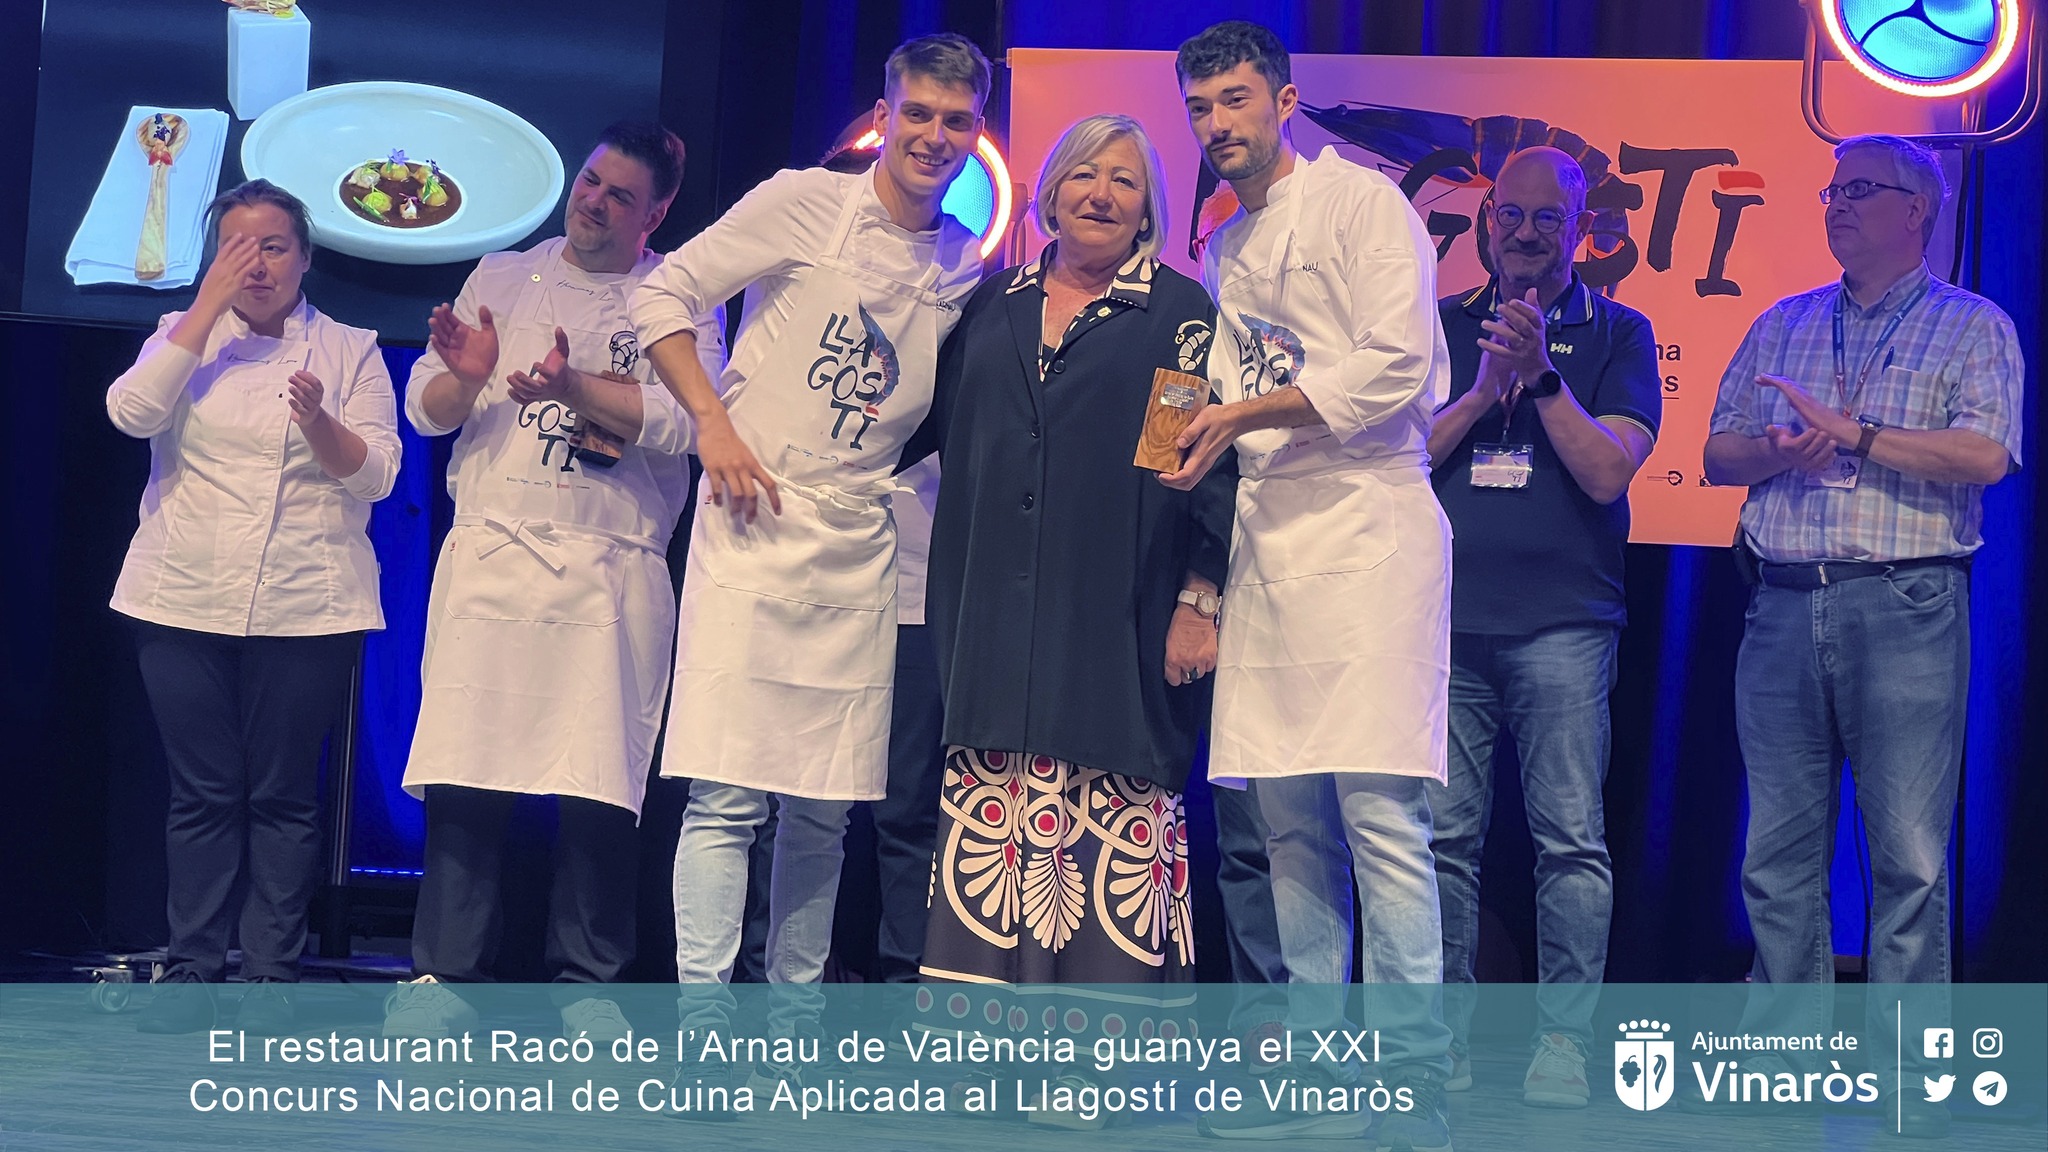 El restaurante Racó de l’Arnau gana el XXI Concurso Nacional de Cocina Aplicada al Langostino de Vinaròs